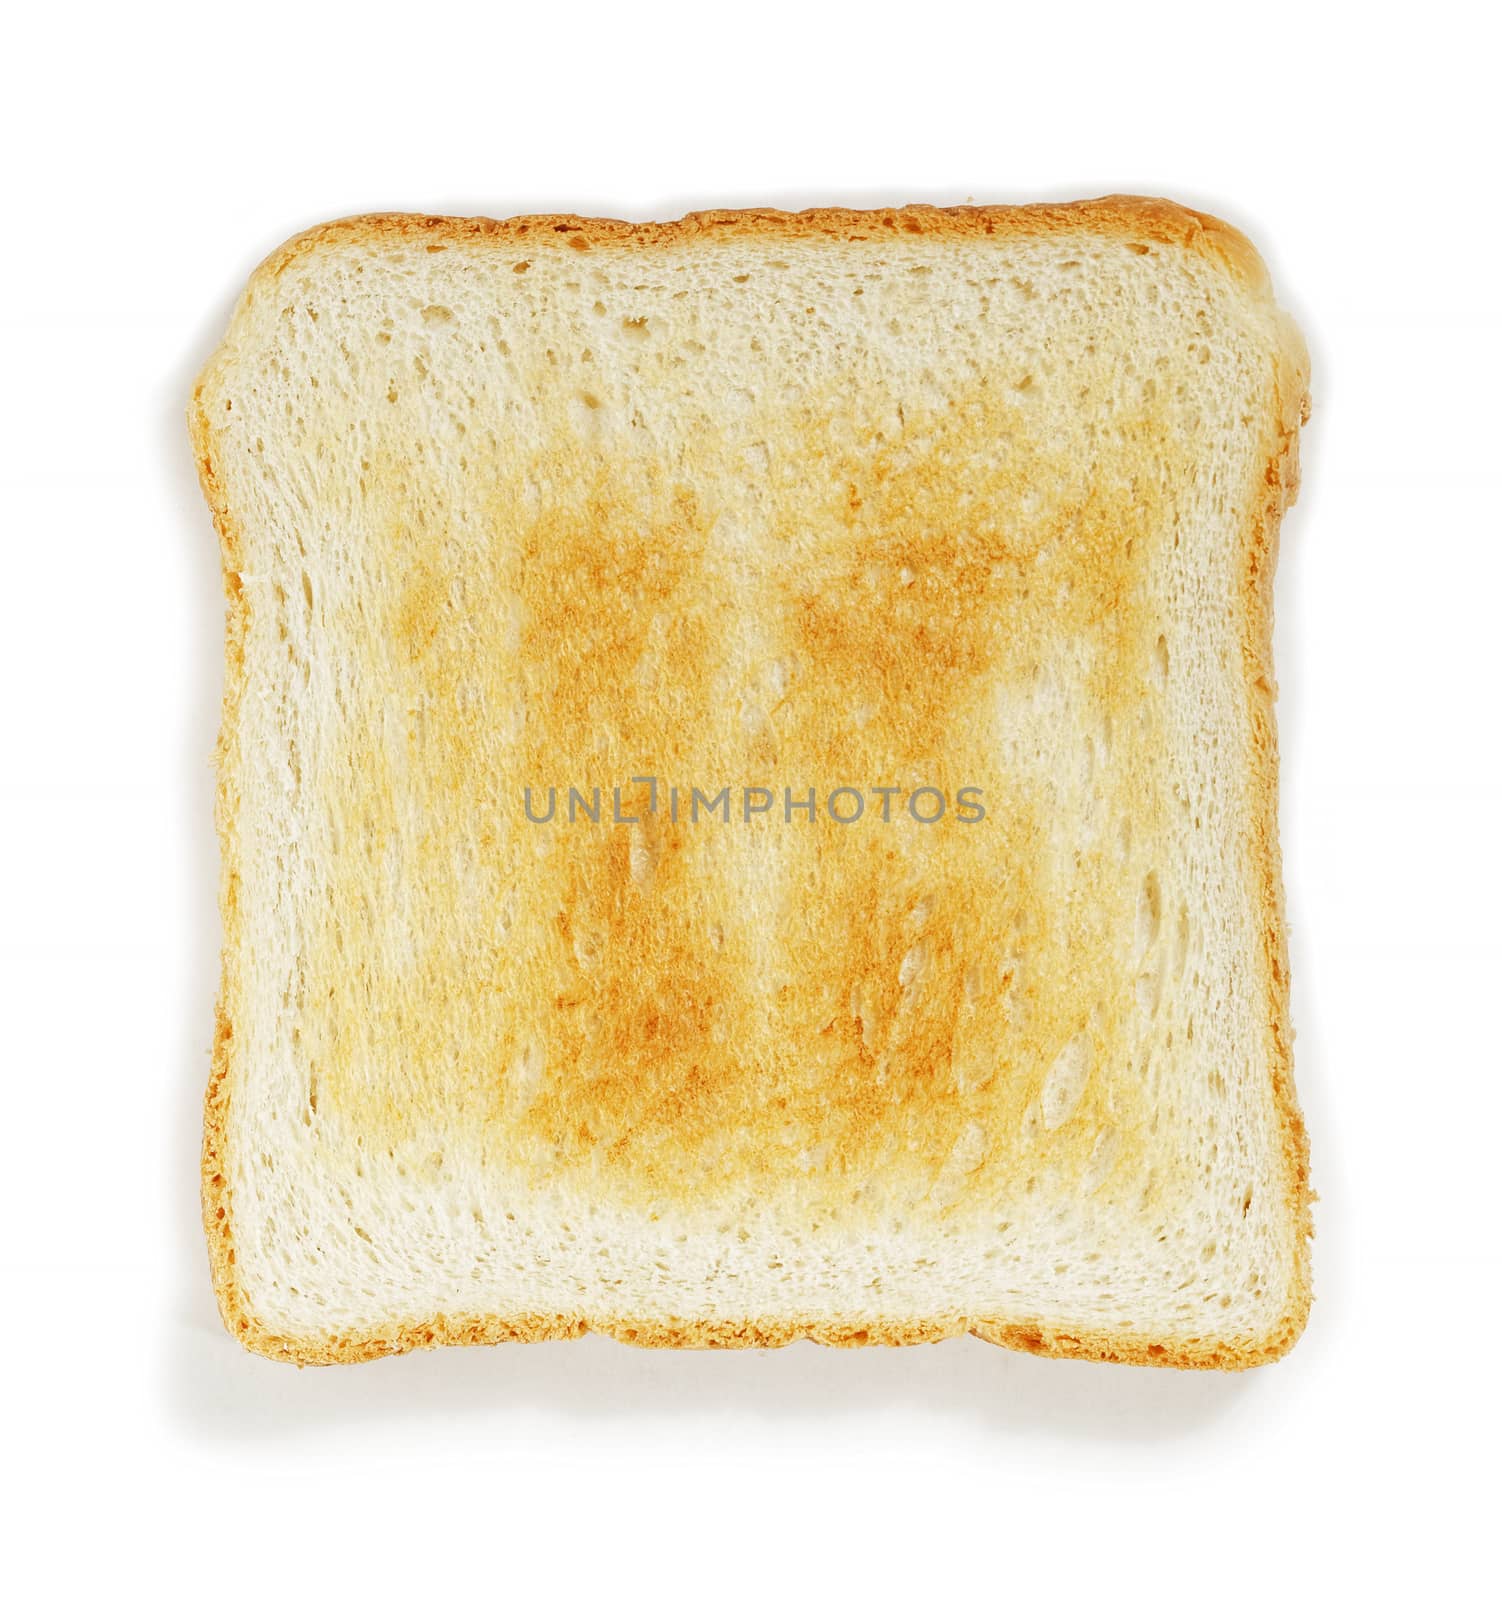 single toast against white background 